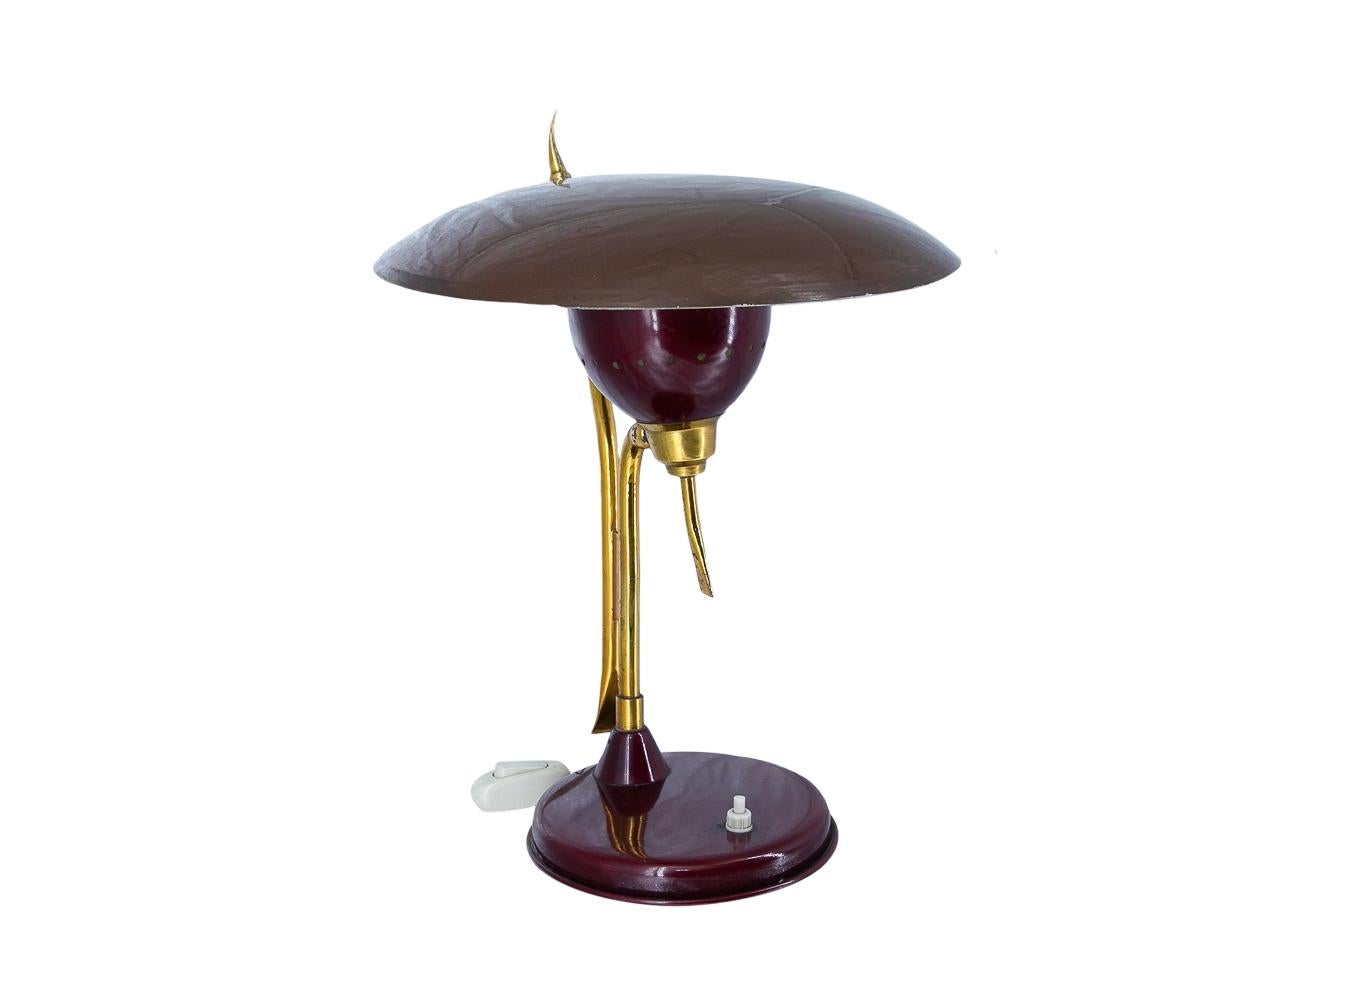 Lampada progettata dal famoso designer Oscar Torlasco, vincitore del Compasso d'oro nel 1959.
Lampada da tavolo e da scrivania, colore vino con paralume reclinabile.
Realizzato in Italia intorno agli anni '50, 1950-1959 dalla famosa azienda